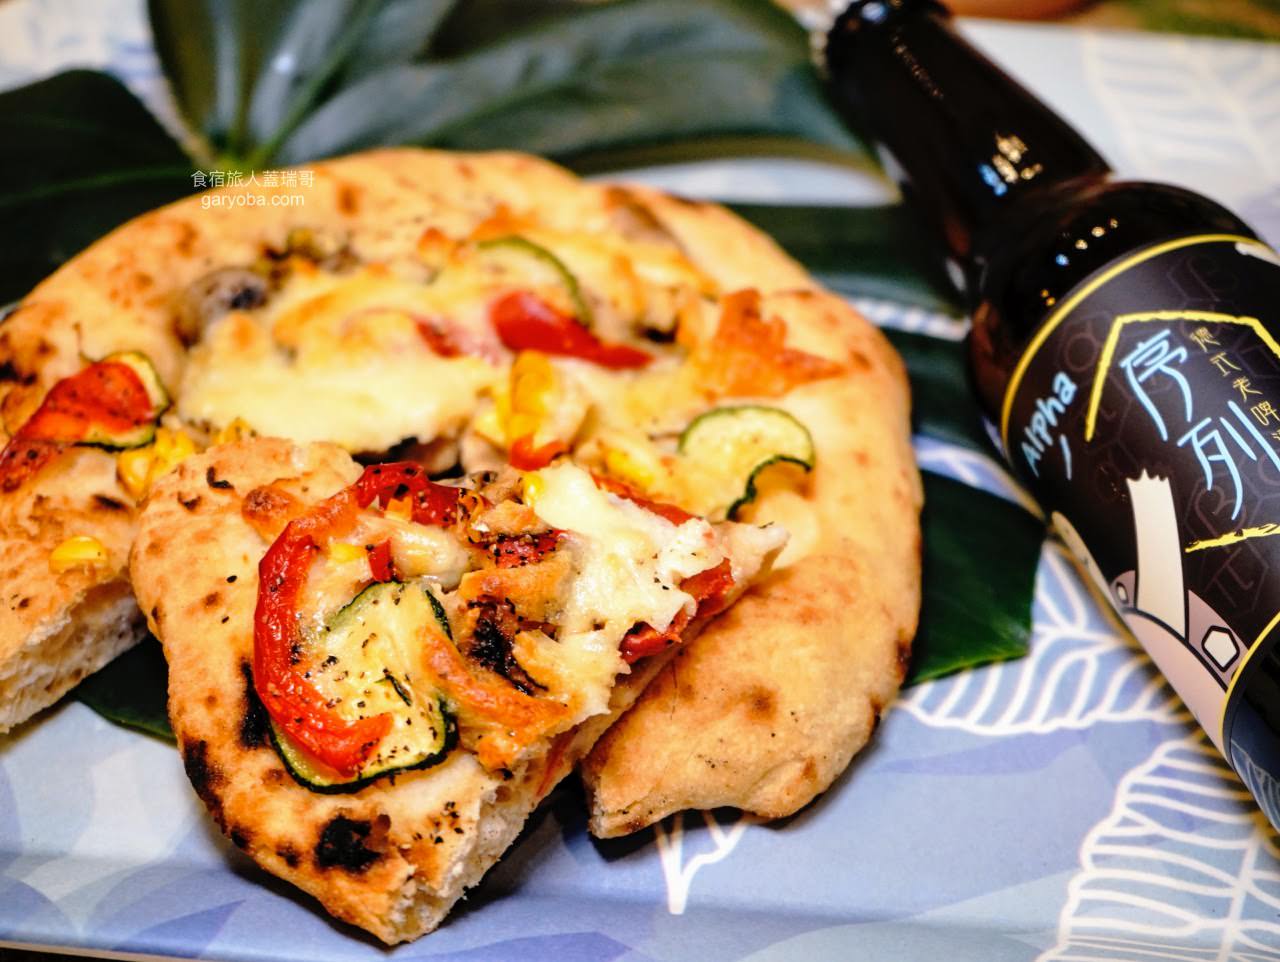 瑪咖朵披薩 Mercato Pizza 宅配到家好滋味！雲朵披薩在家也能輕鬆品嚐